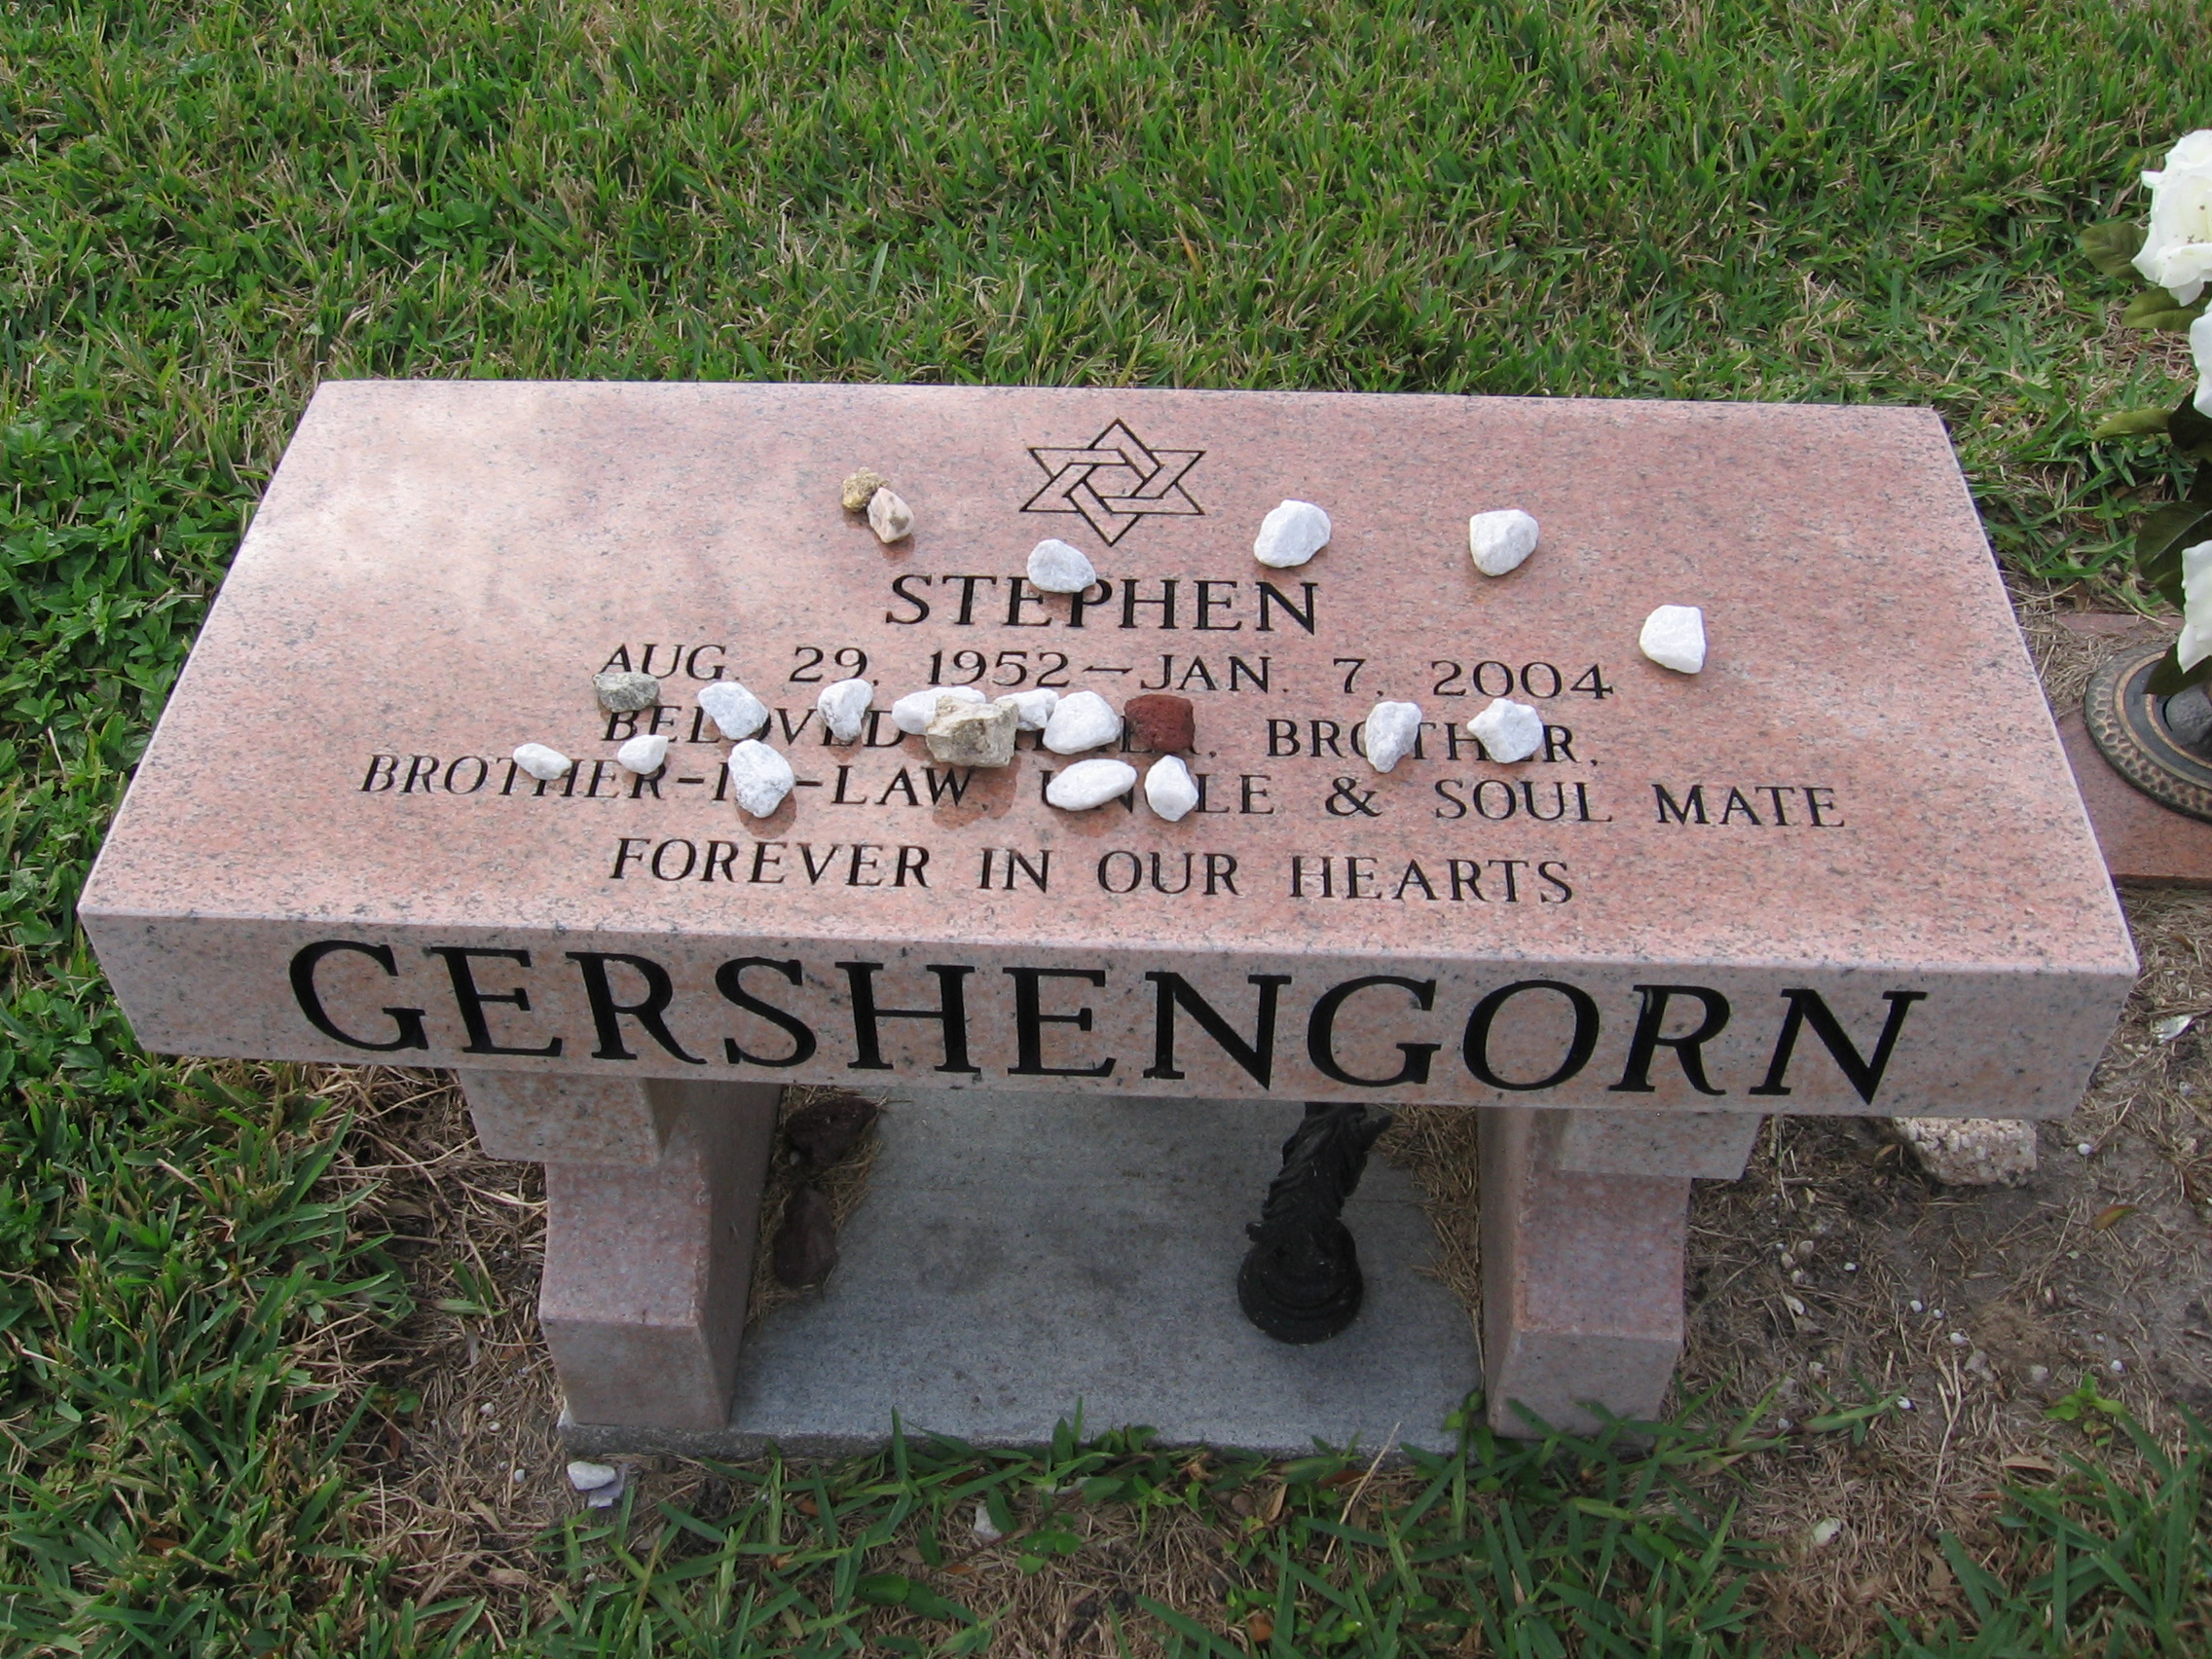 Stephen Gershengorn